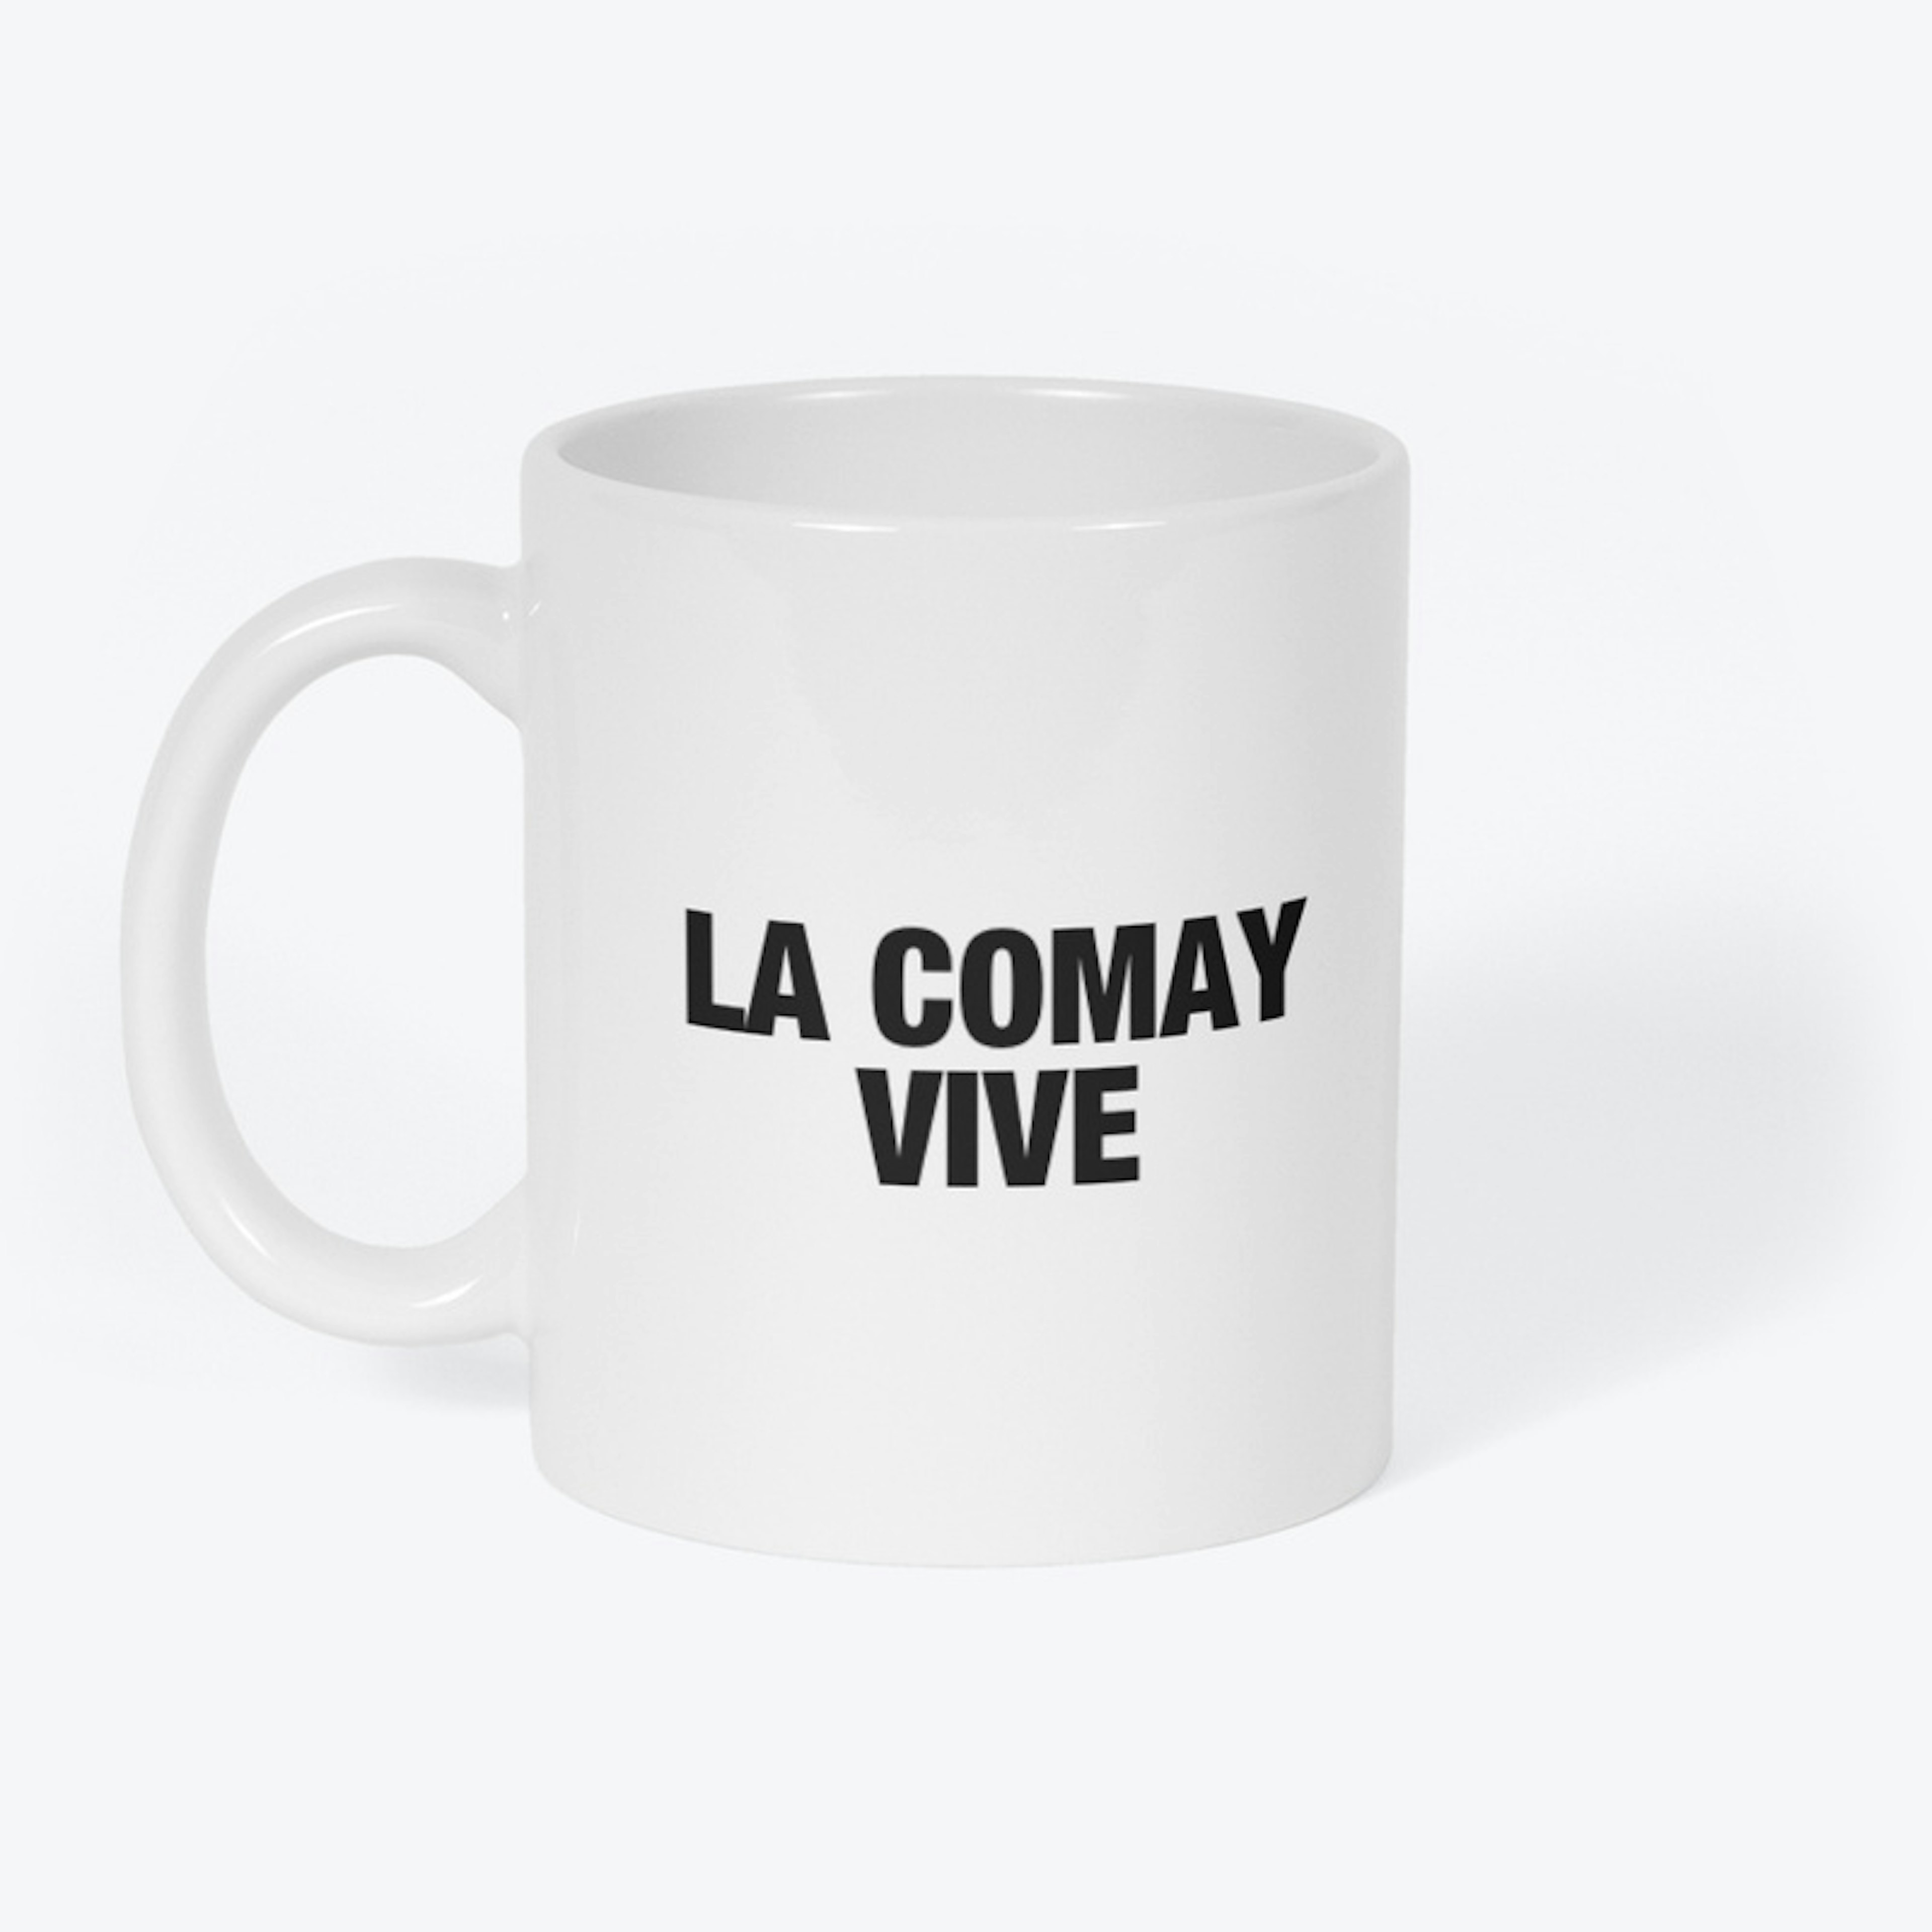 LA COMAY VIVE